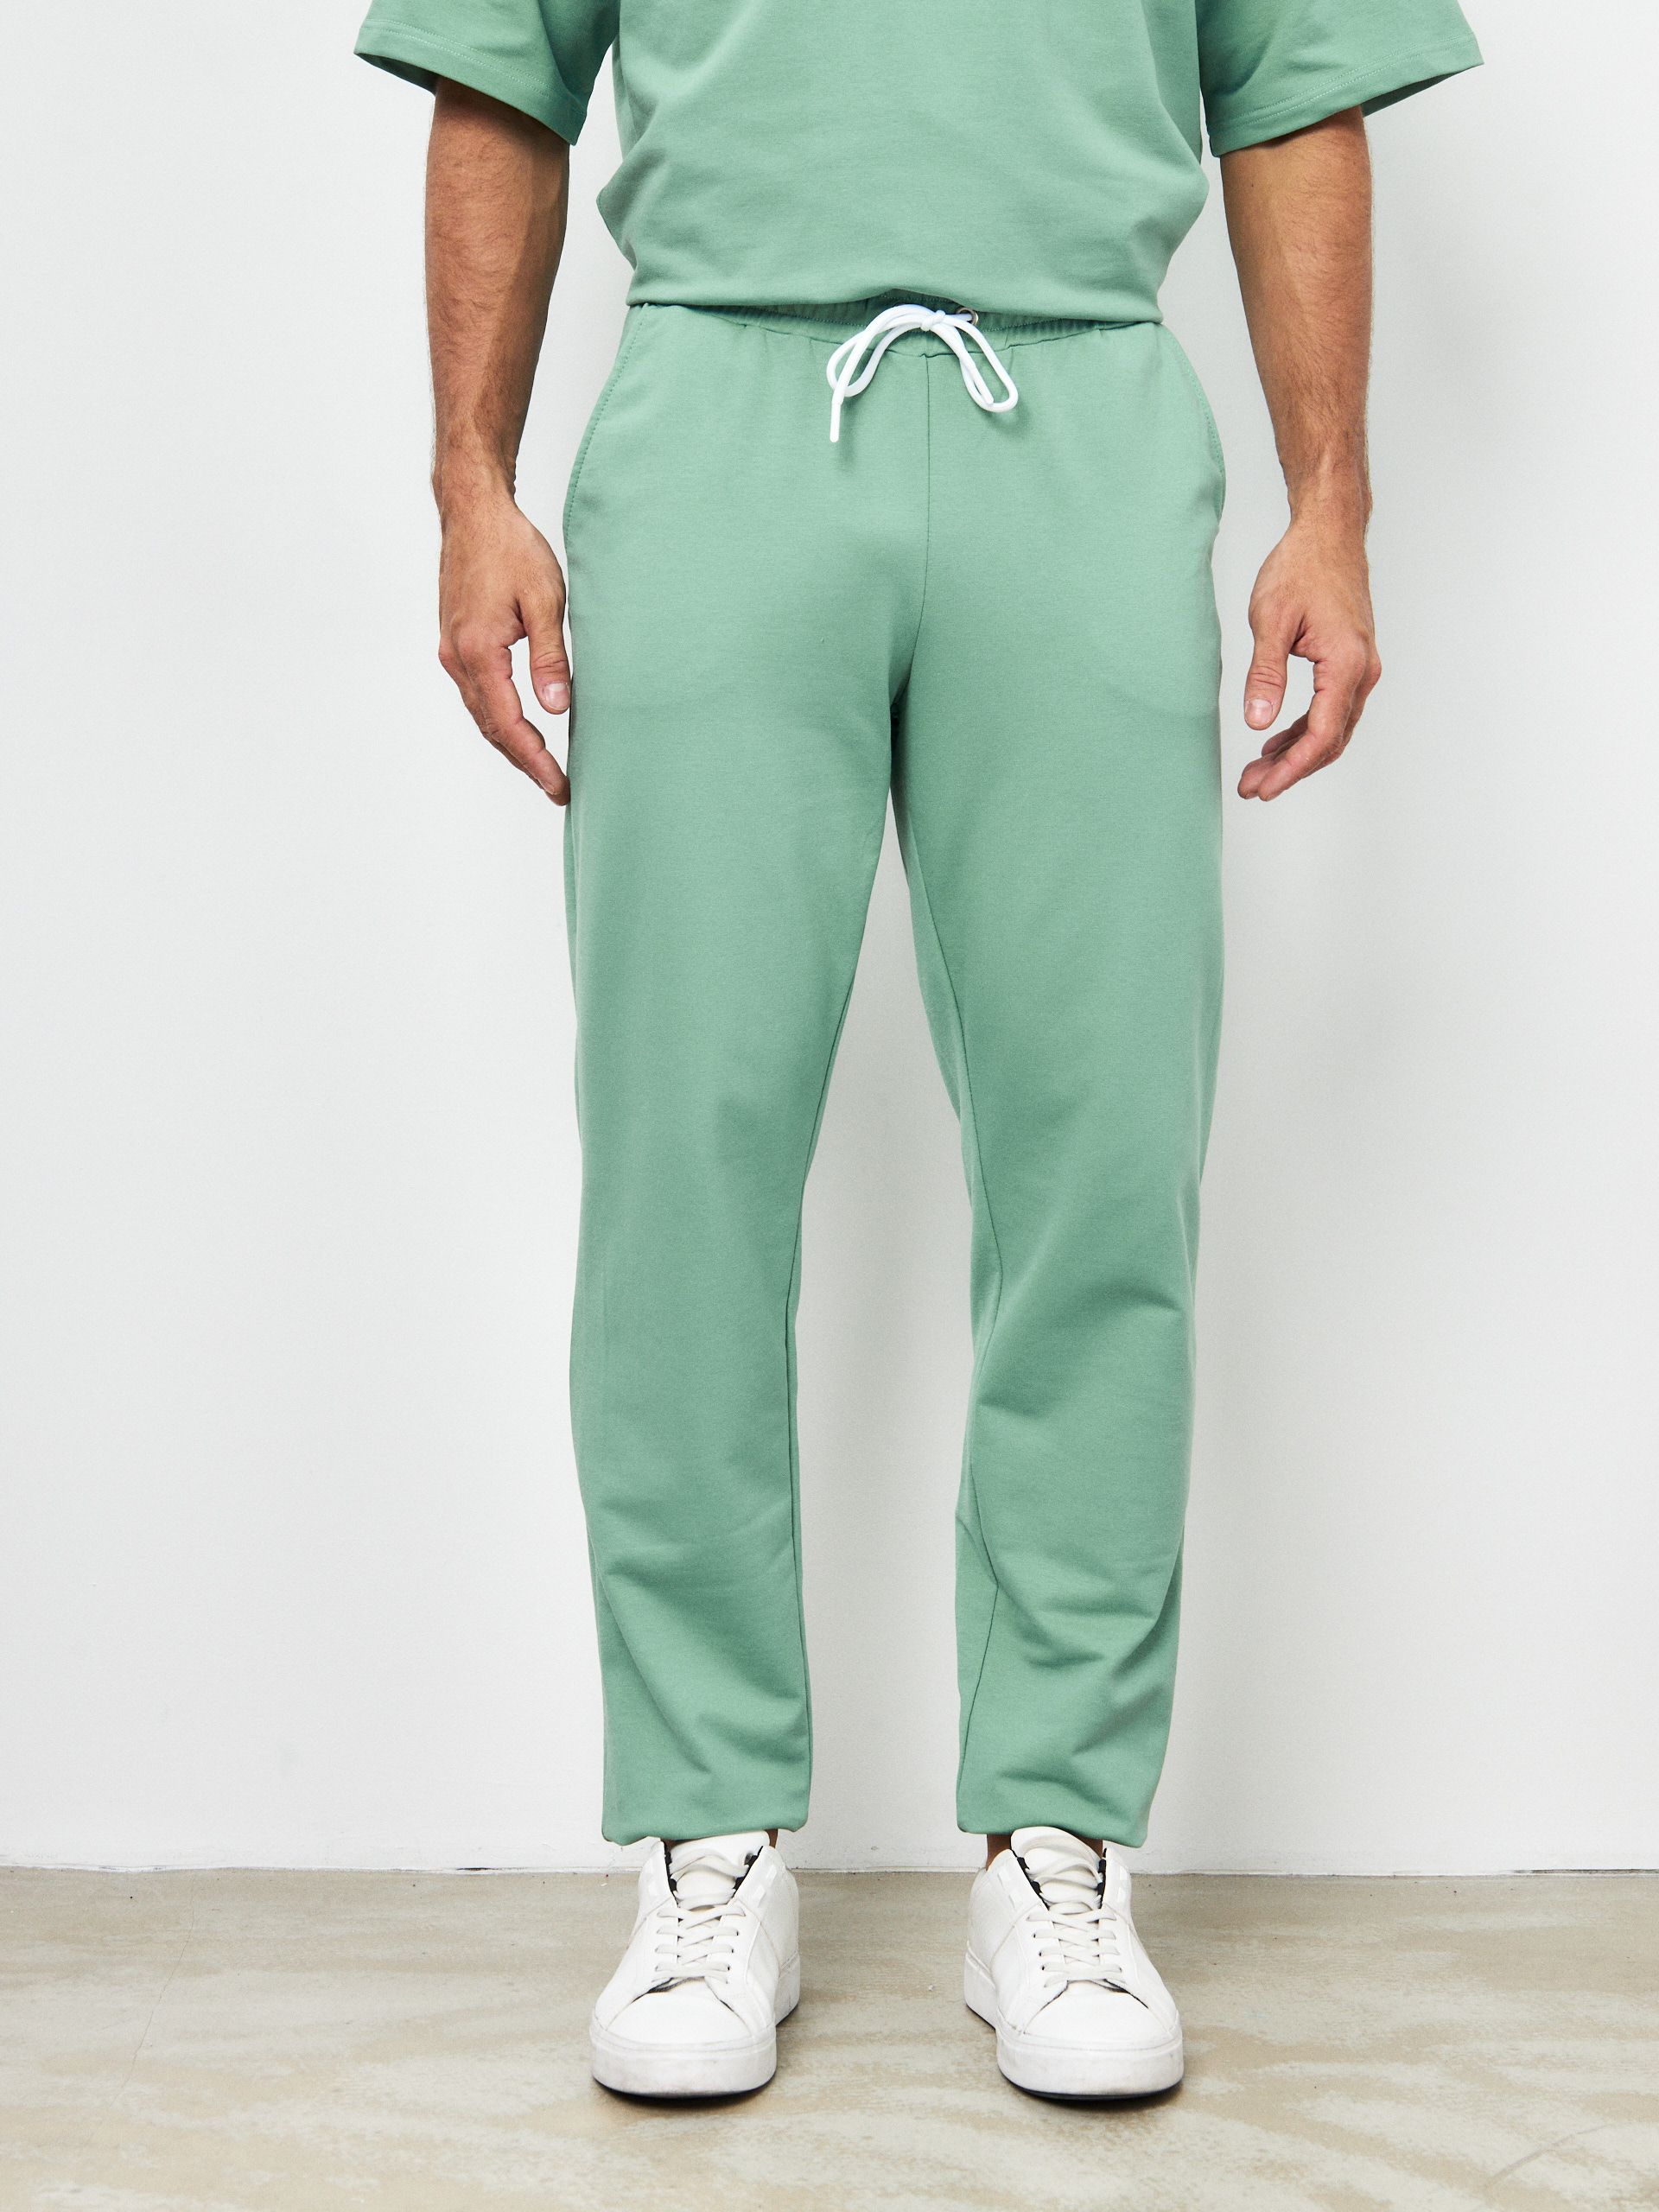 Спортивные брюки мужские MOM №1 MOM-88-3170 зеленые 52 RU